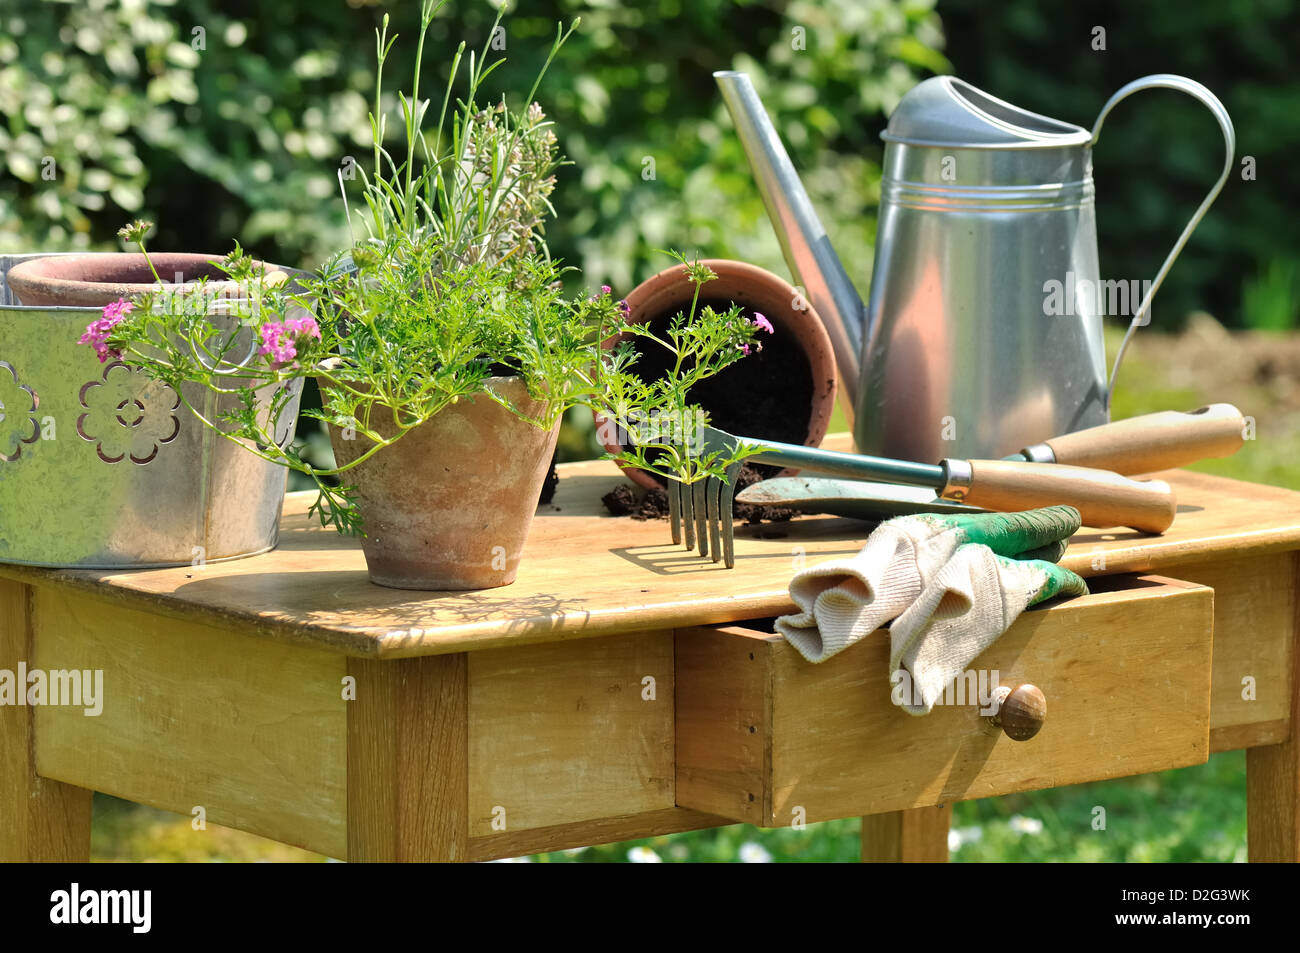 Gartengeräte und Pflanzen angeordnet auf einem Holztisch im Garten Stockfoto